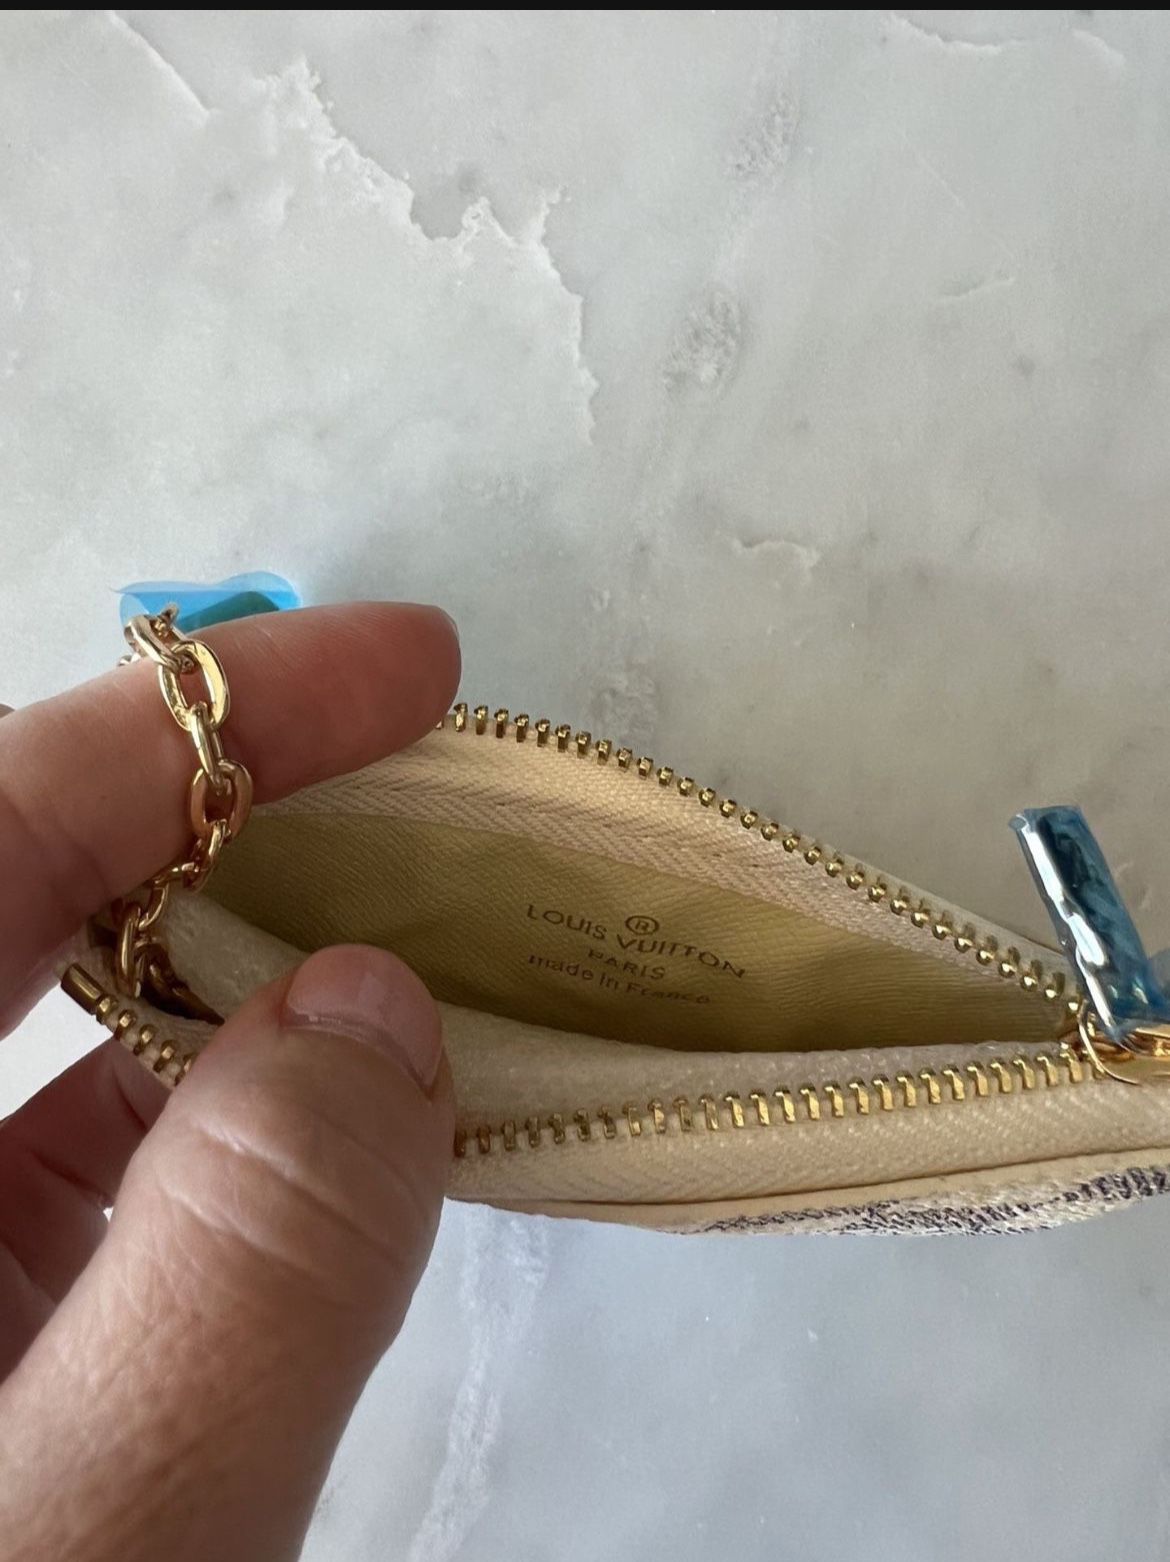 Louis Vuitton Keychain Wallet for Sale in Glendale, AZ - OfferUp